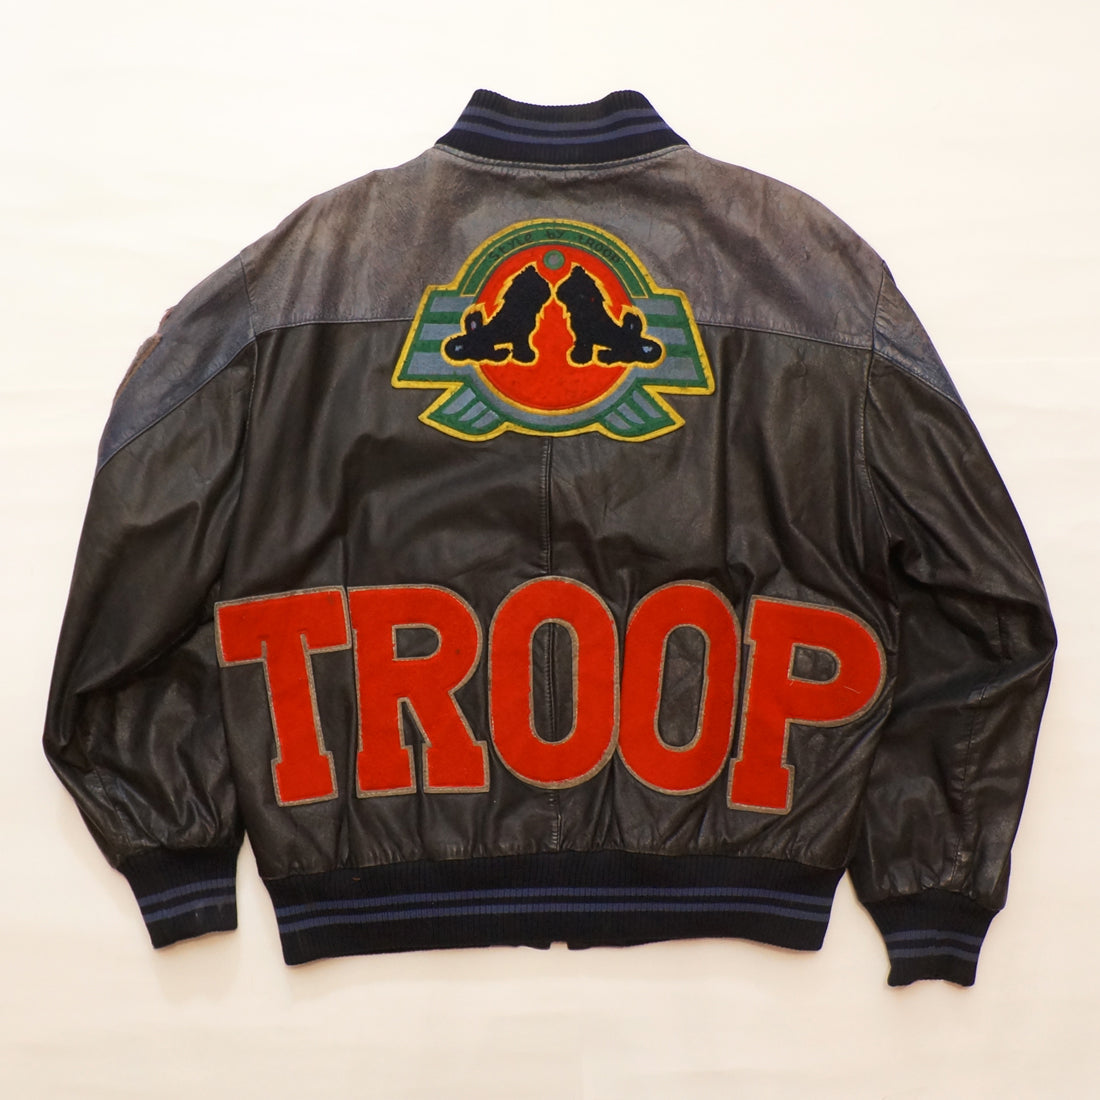 Vintage "Style By Troop" Leather Troop Jacket (MEDIUM)